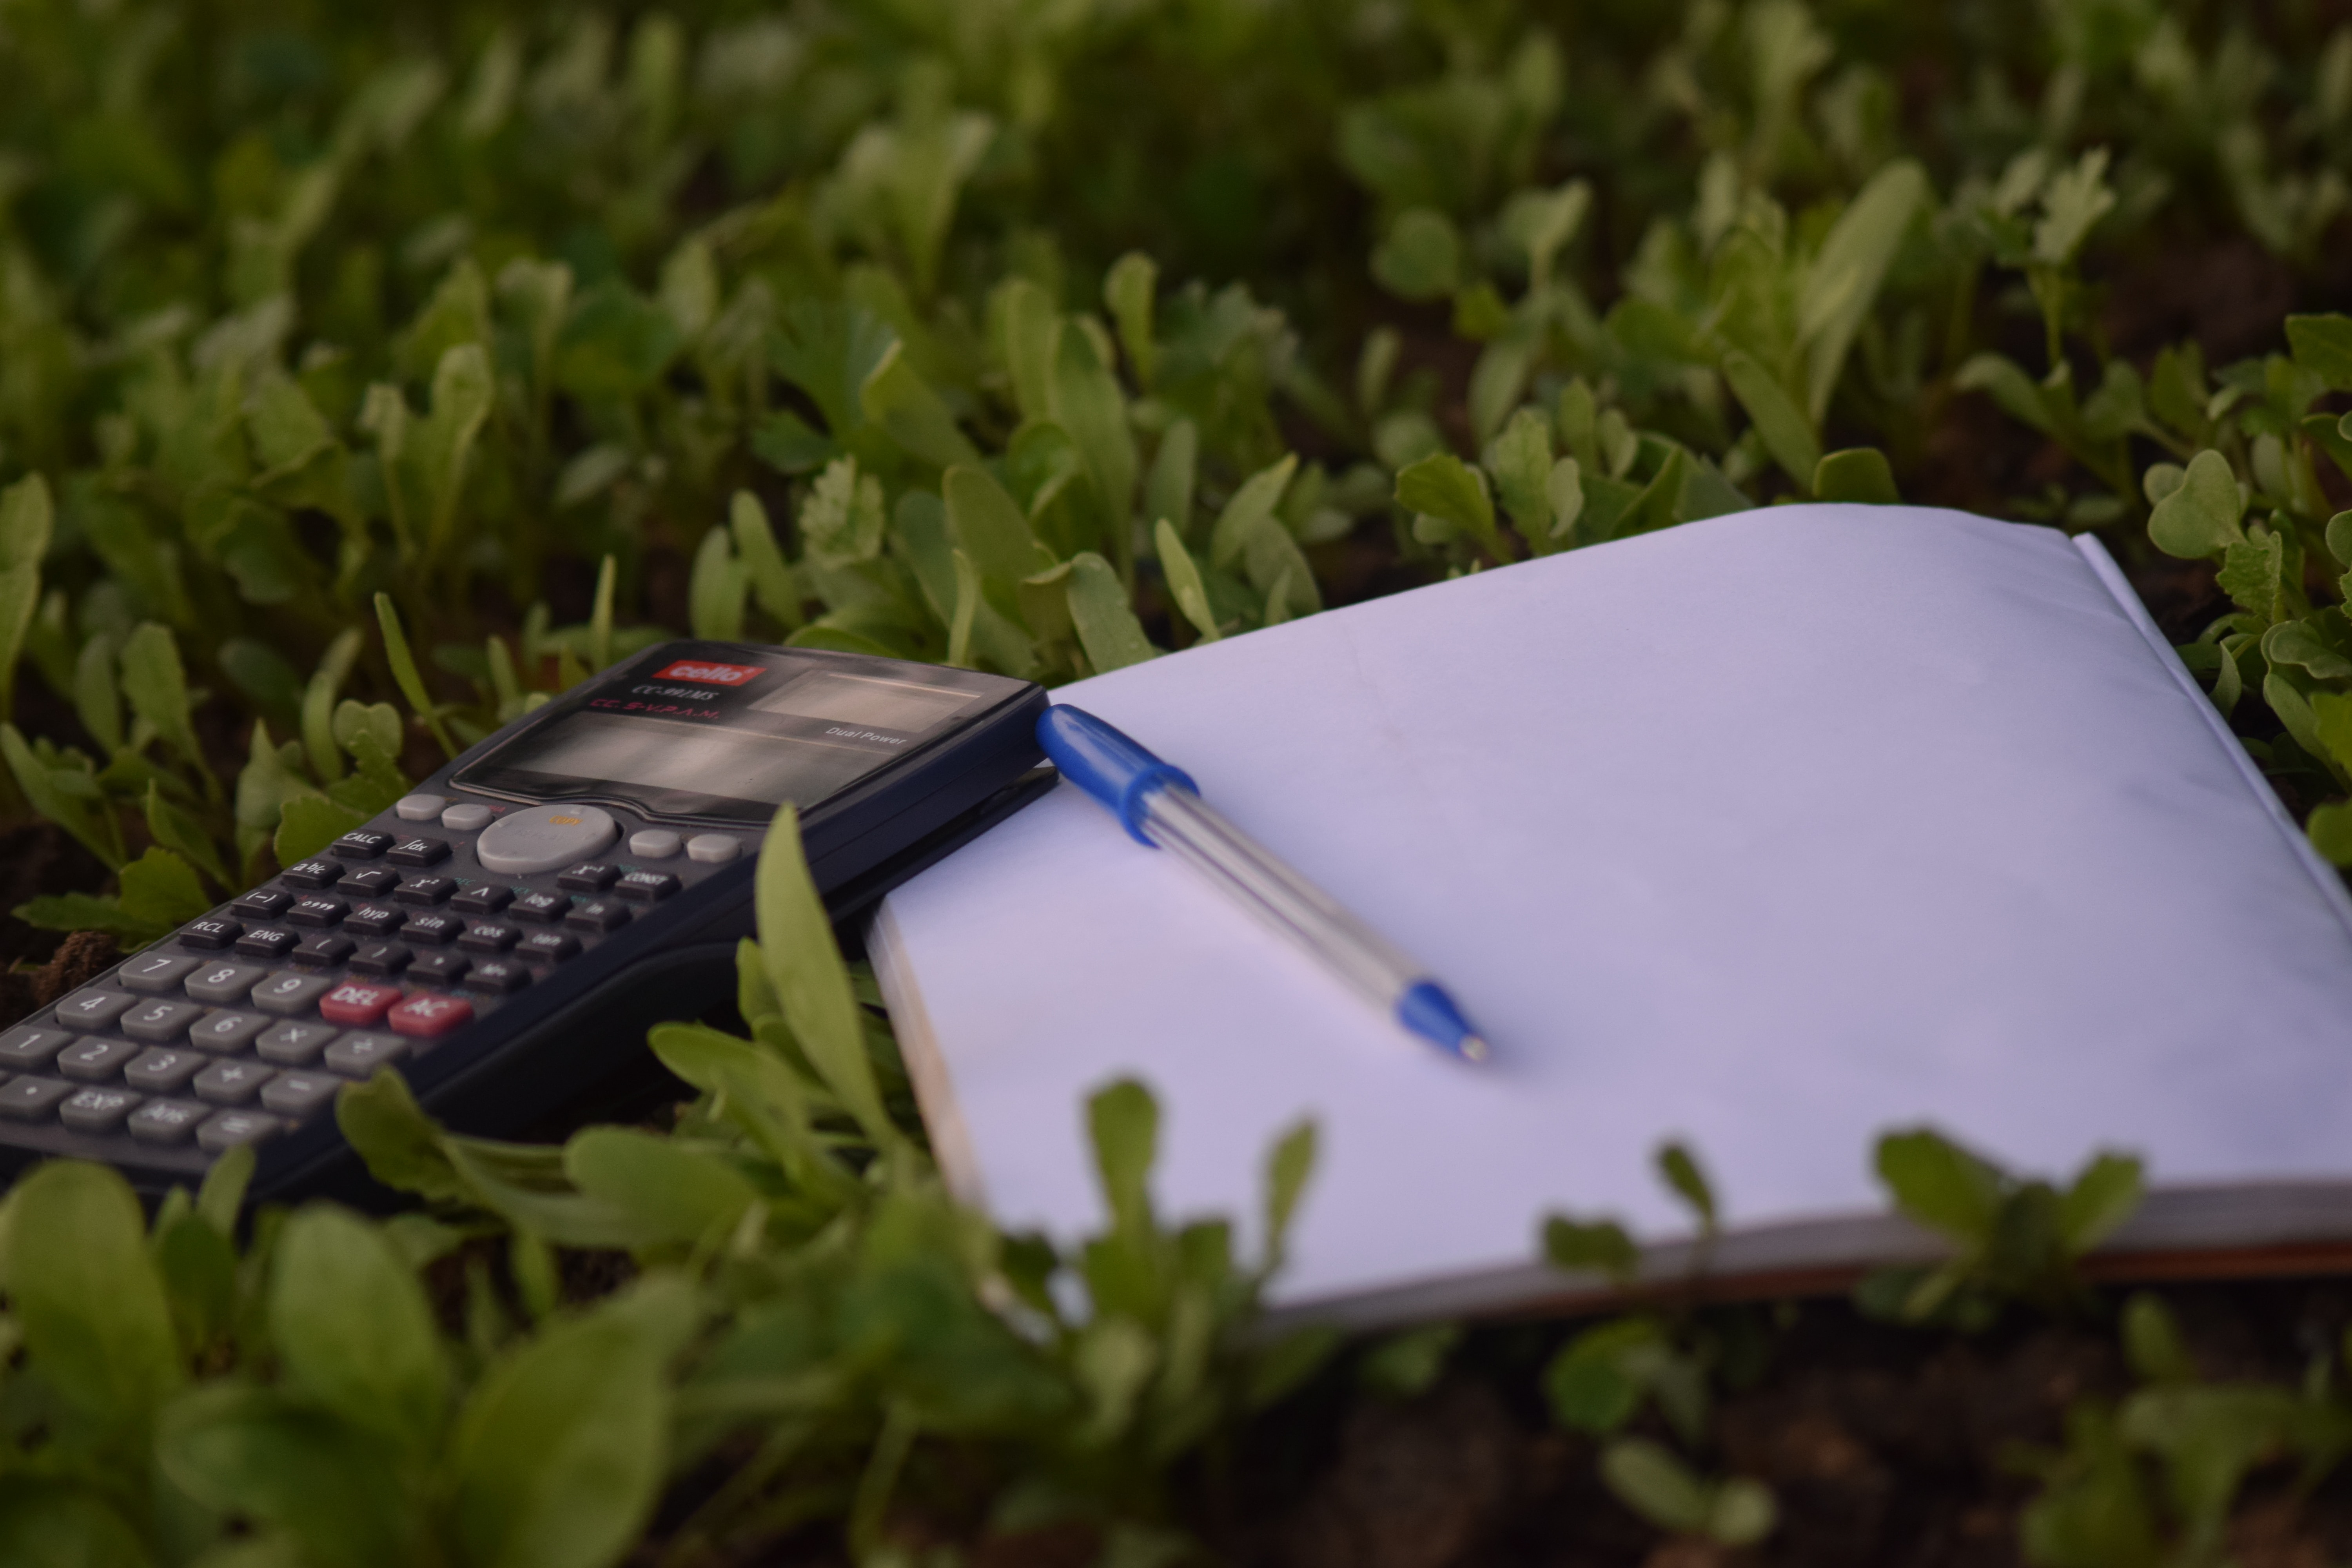 Notatki, długopis i kalkulator leżące w trawie